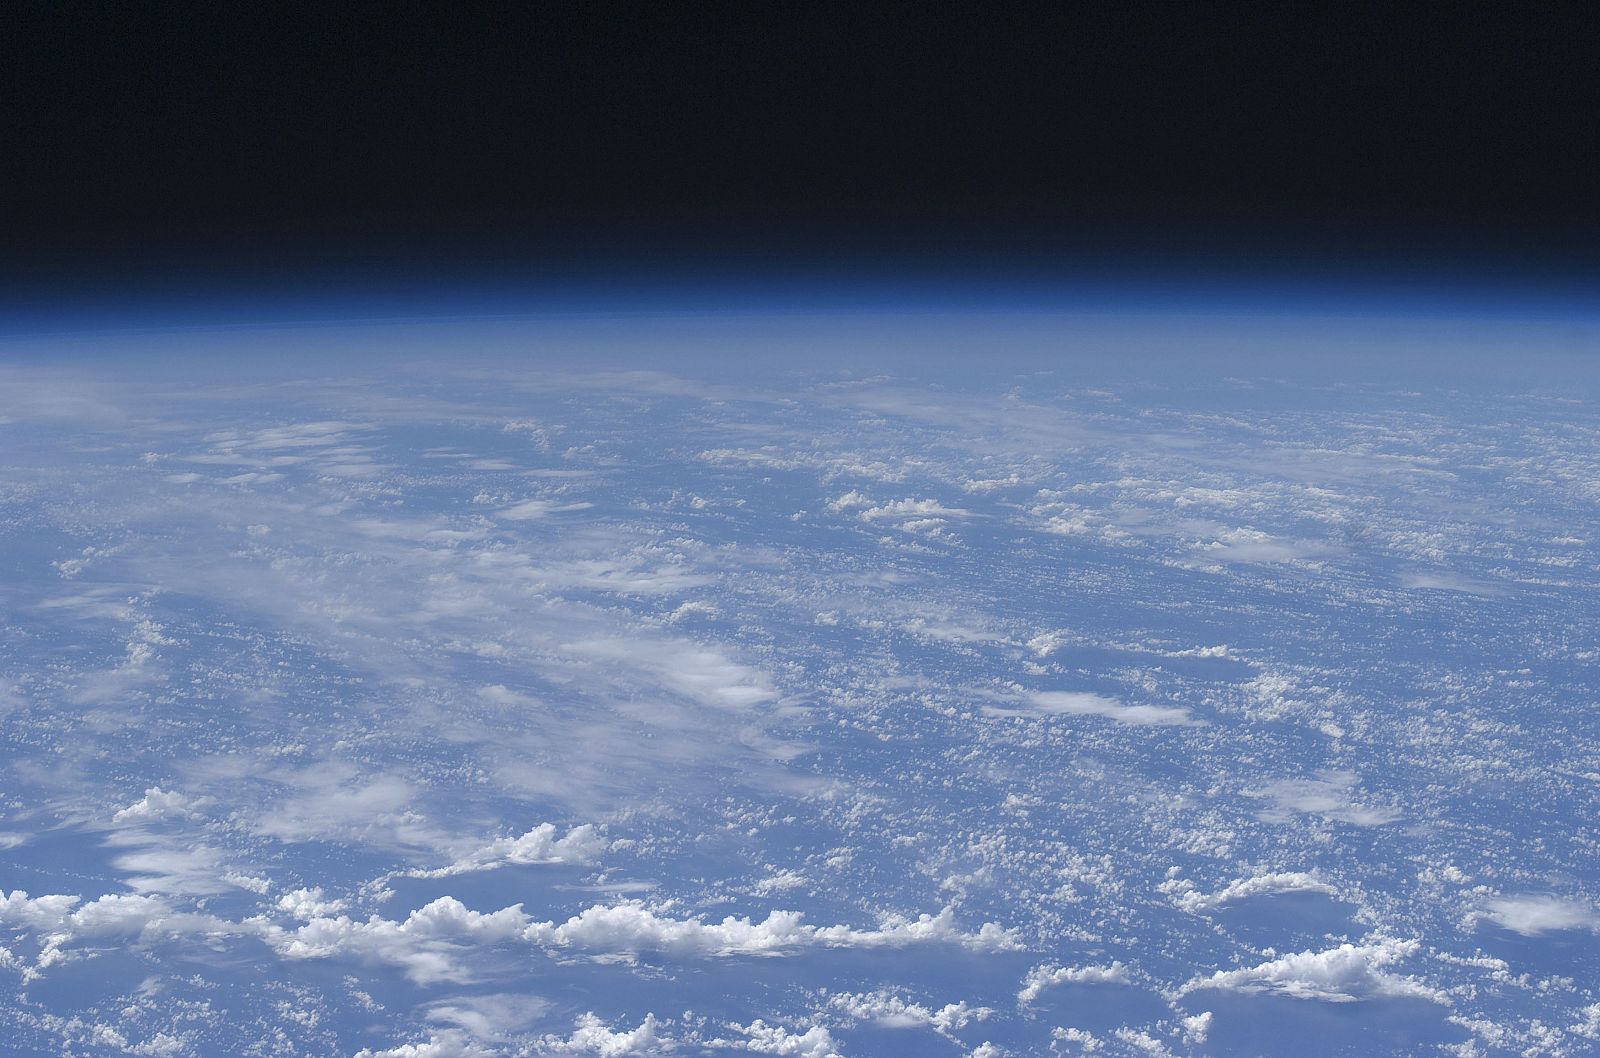 Vista de la atmosfera terrestre tomada desde la Estación Espacial Internacional